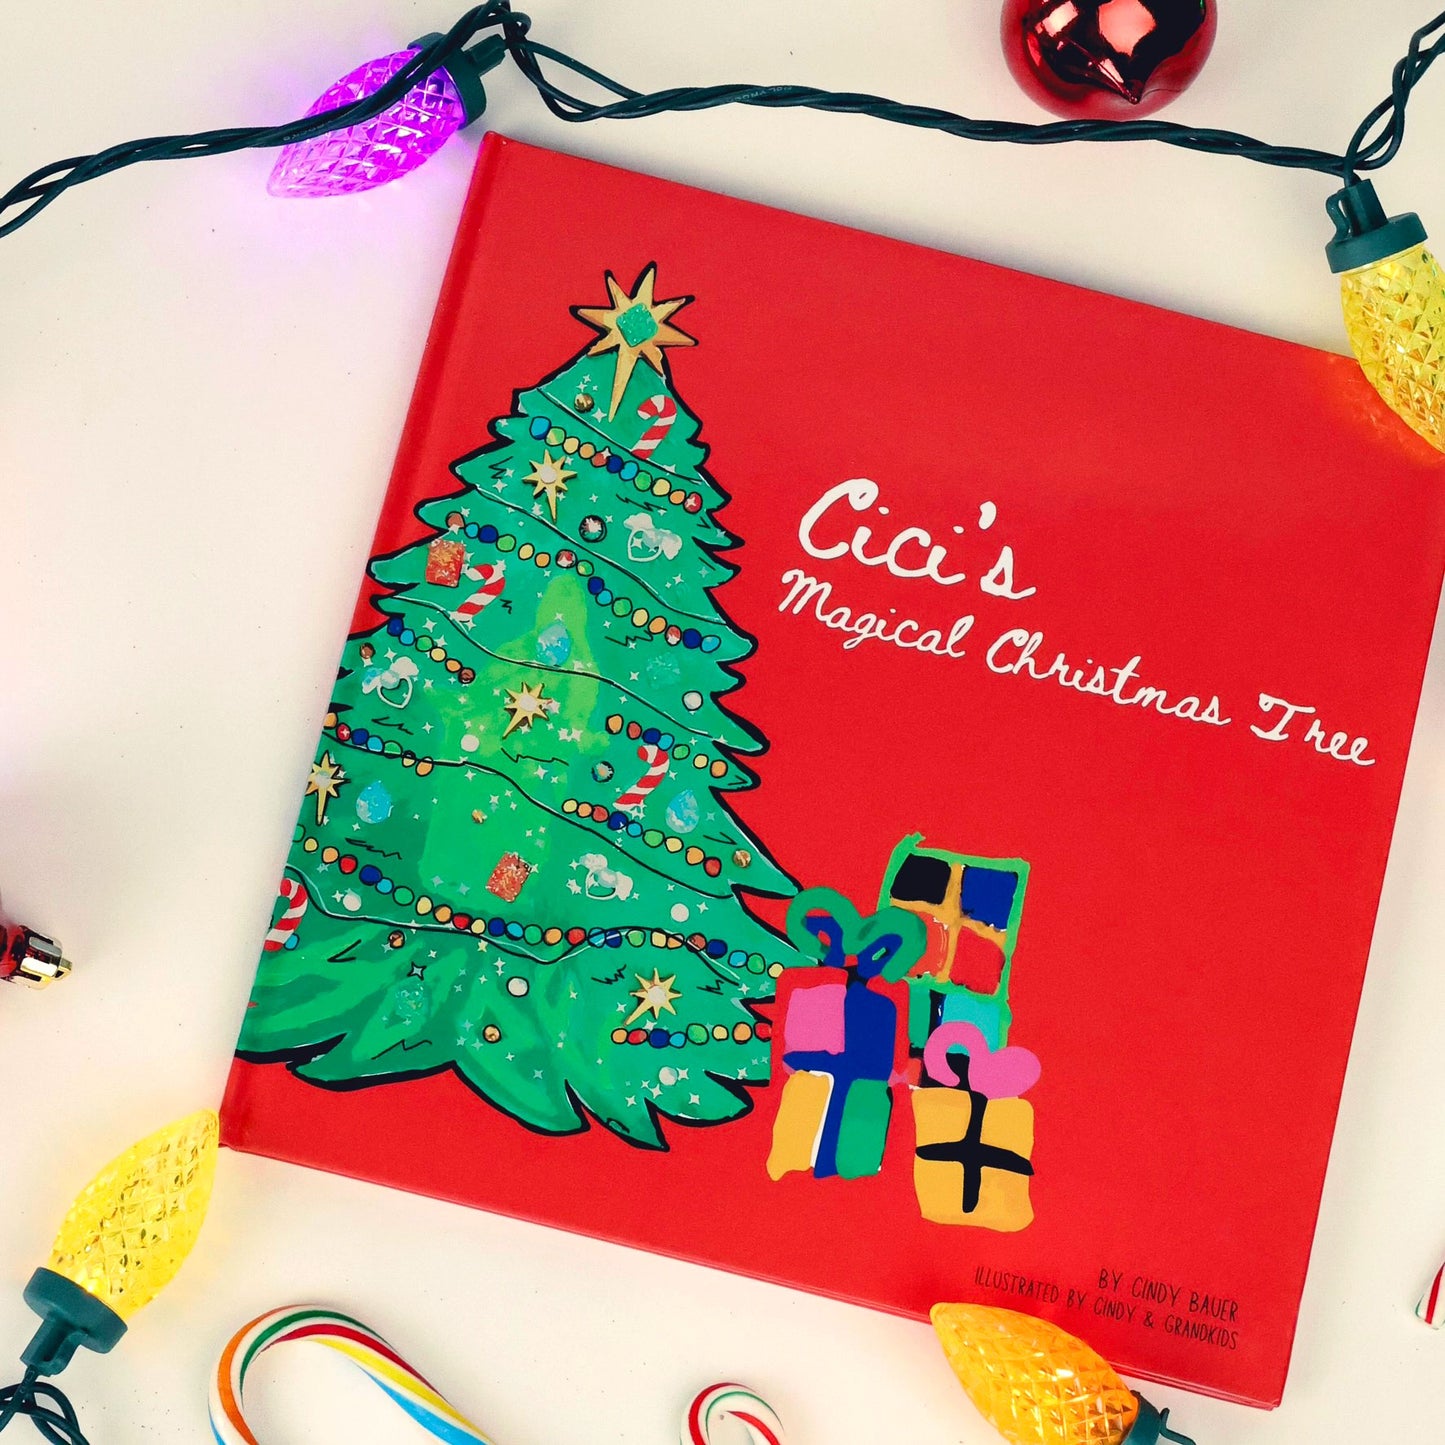 Cici’s Magical Christmas Tree